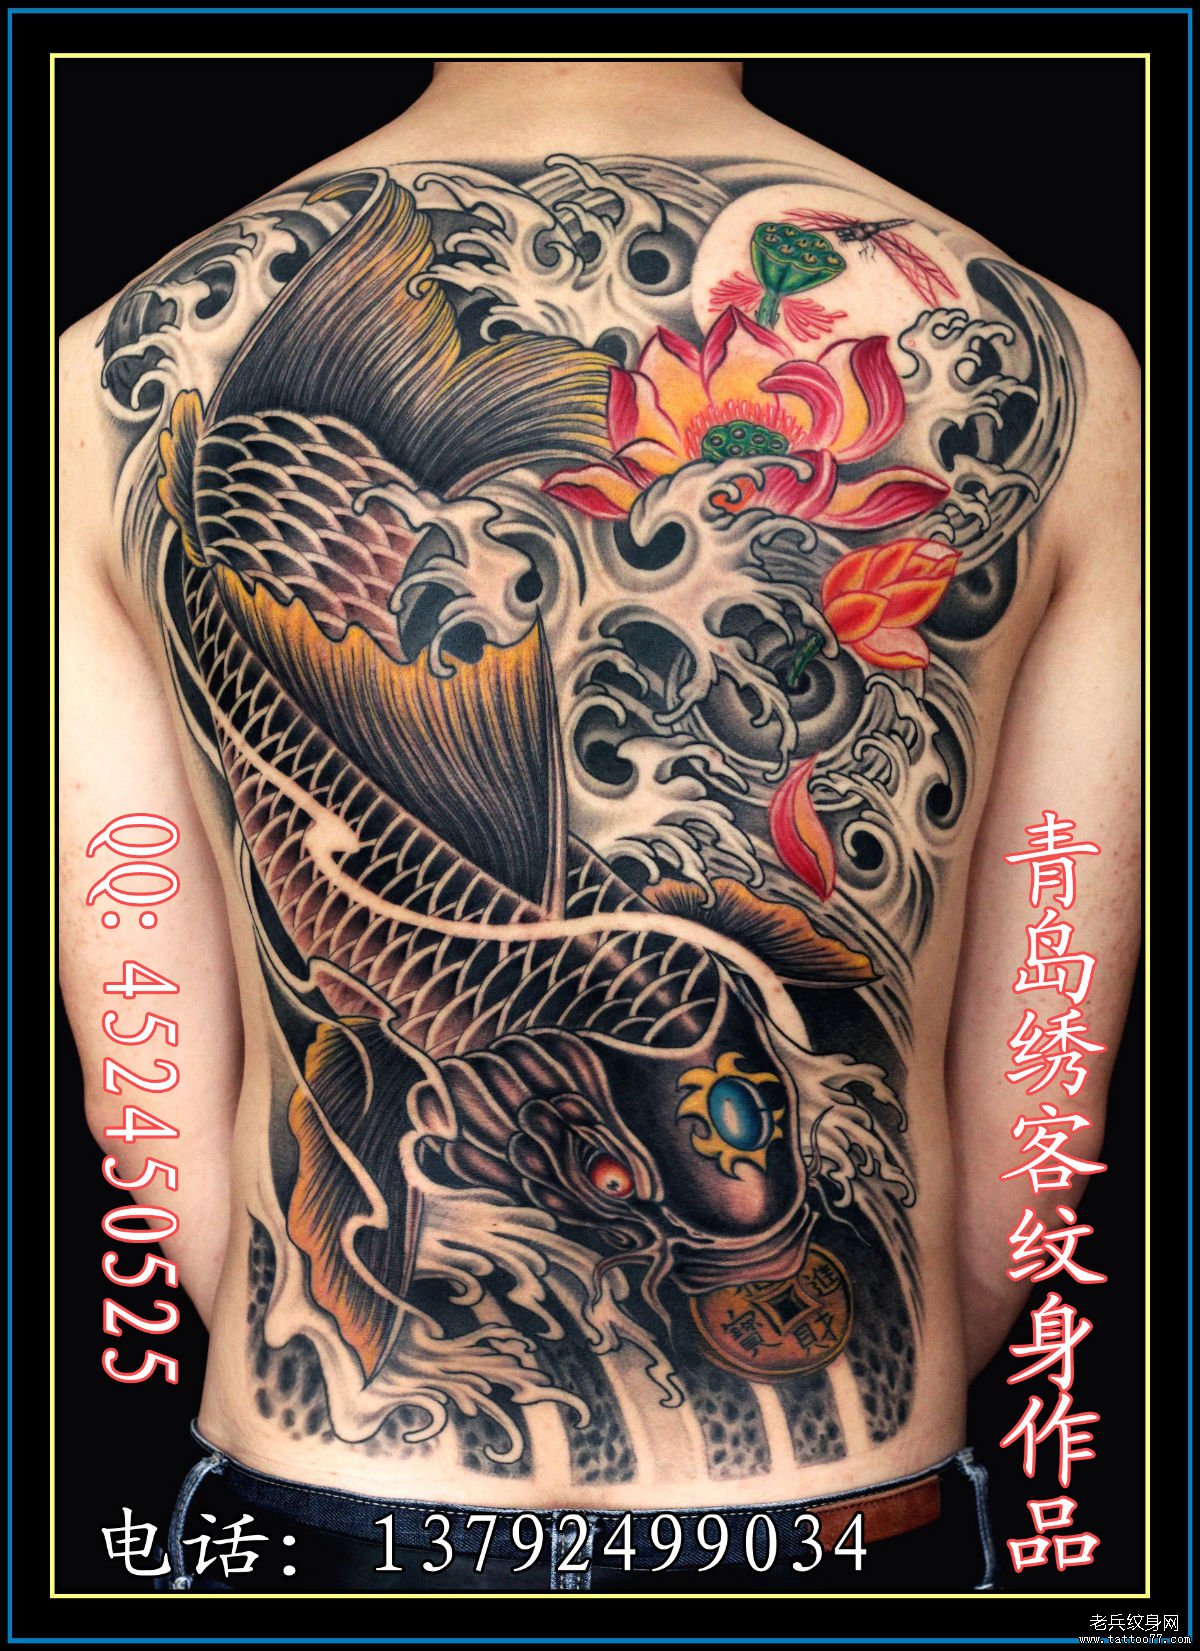 武汉专业纹身为你推荐一款霸气时尚的满背鲤鱼纹身图案